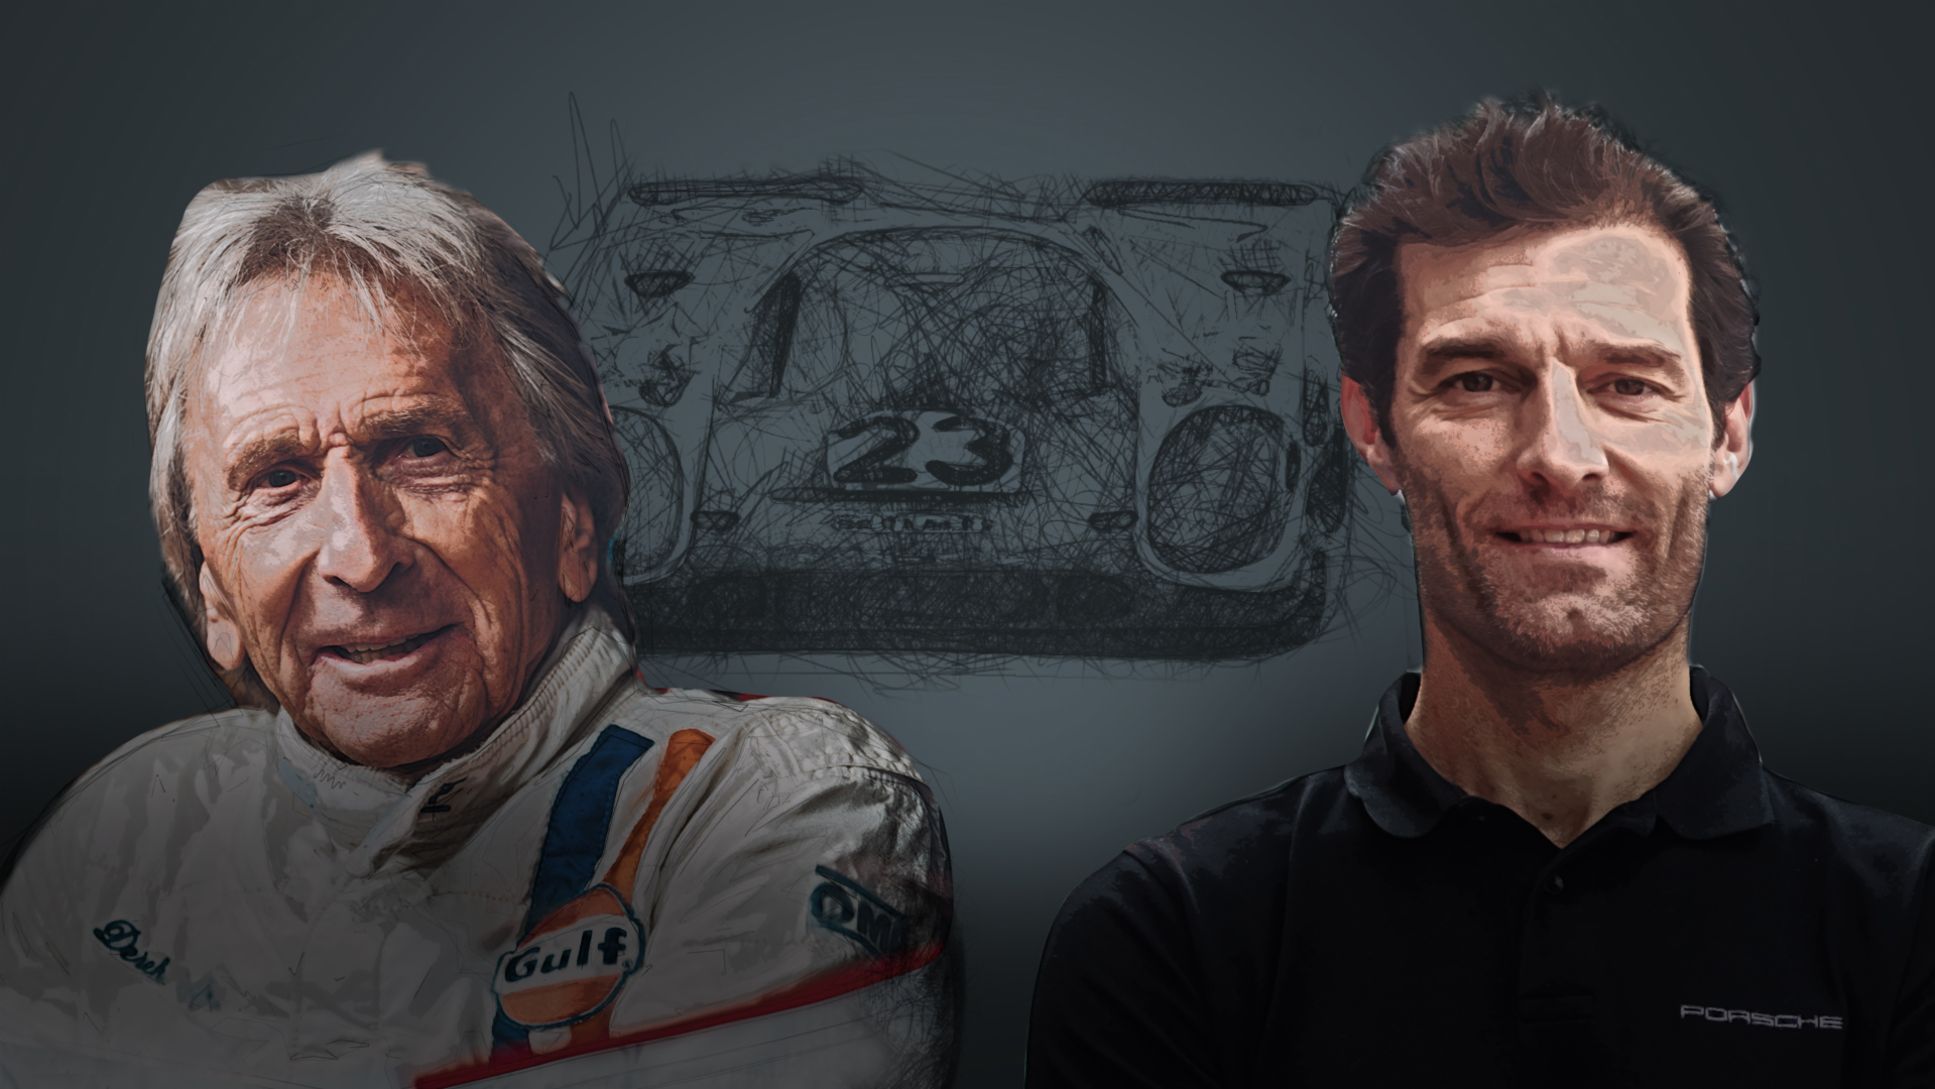 Derek Bell, Mark Webber, l-r, 2020, Porsche AG